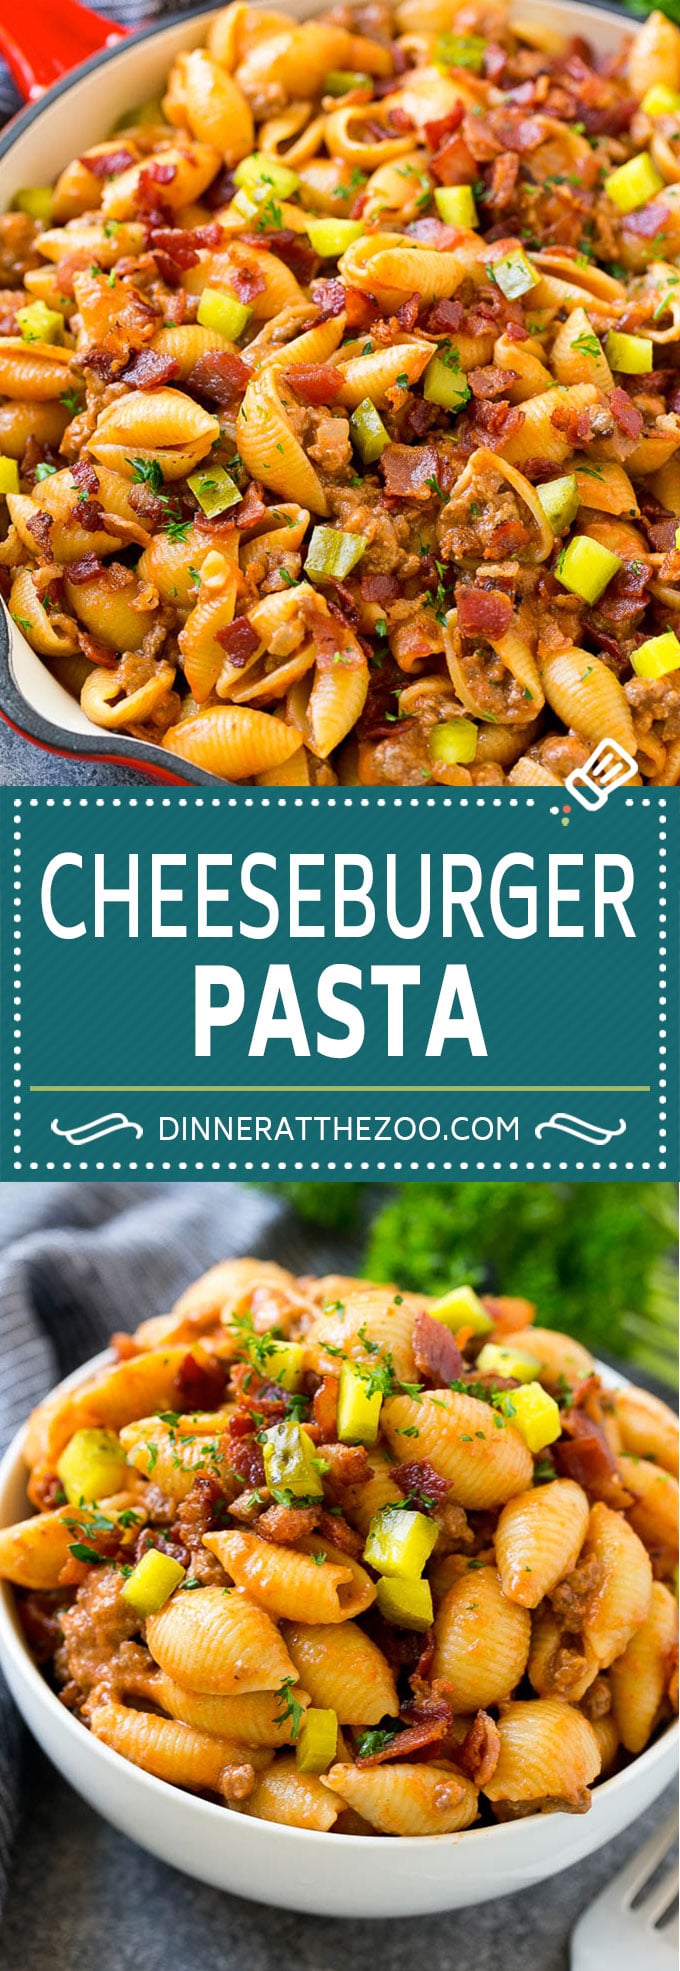 Cheeseburger Pasta | Hamburger Pasta | Ground Beef Pasta #cheeseburger #bacon #pasta #dinneratthezoo